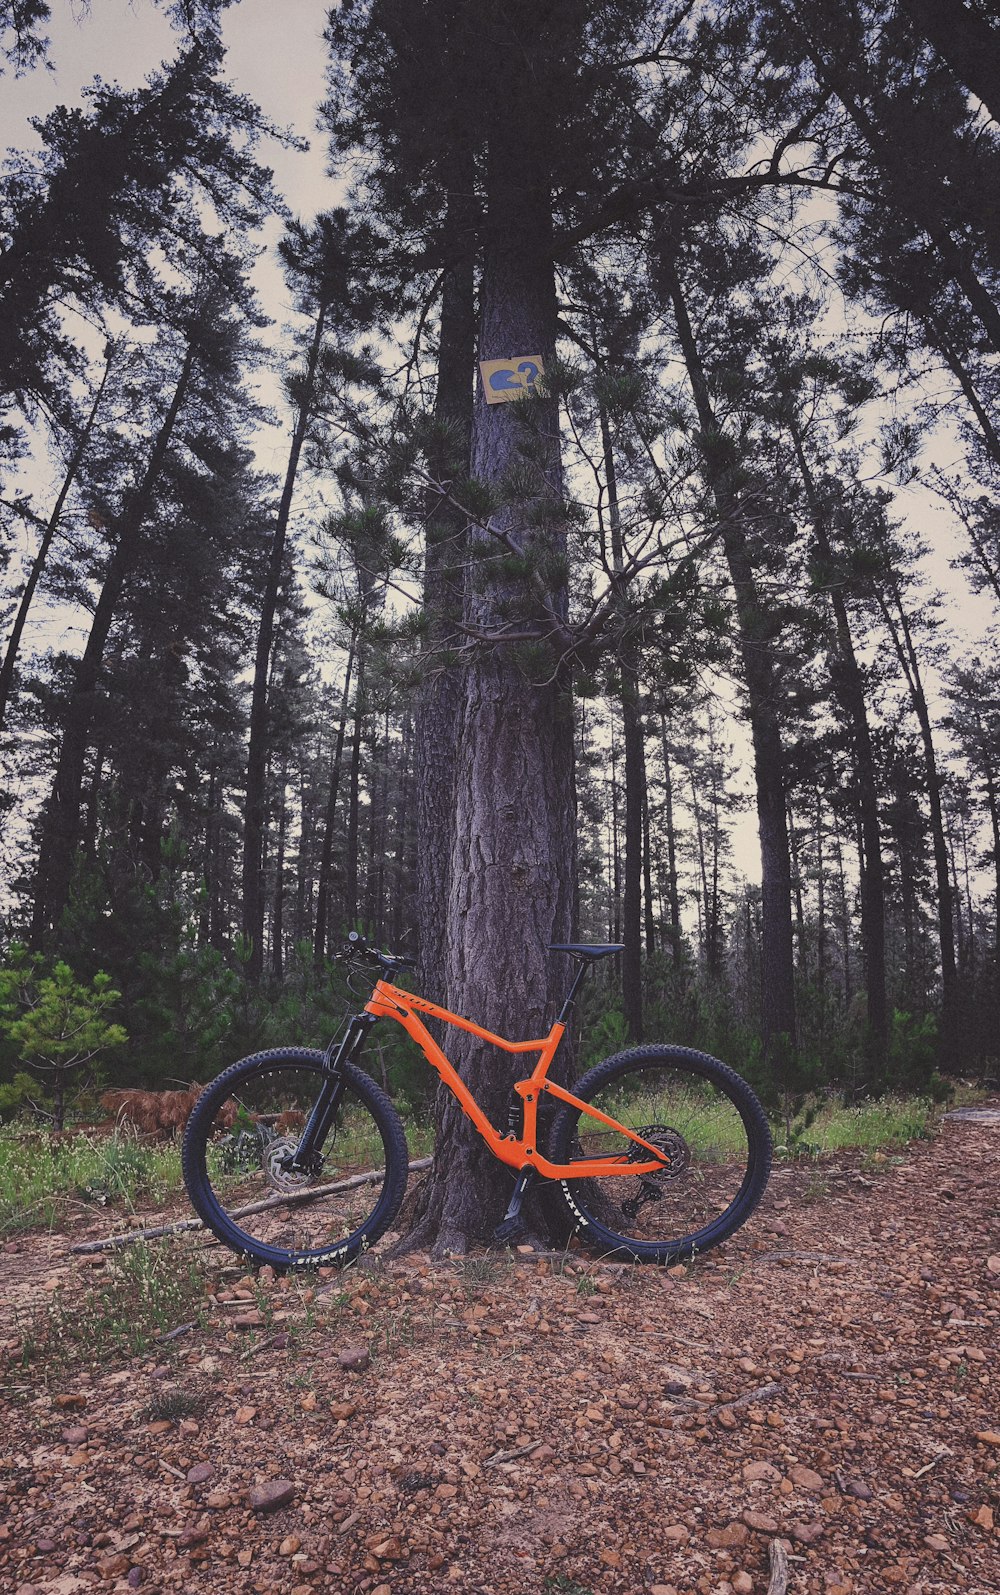 숲속의 나무에 기대어 있는 주황색 자전거